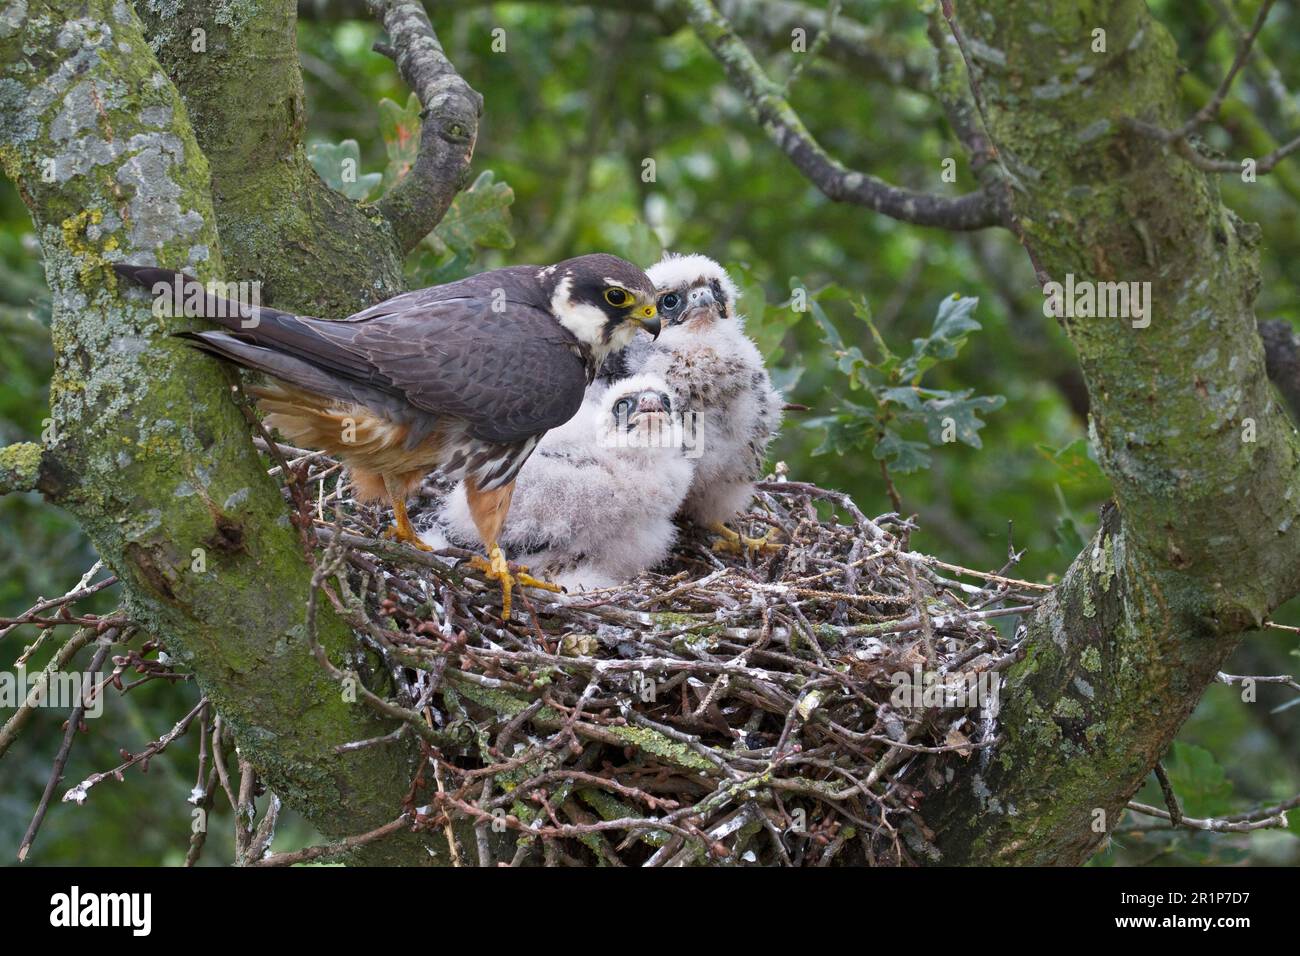 Eurasisches hobby (Falco subbuteo), weiblich, ausgewachsen, mit Küken im Nest, die sich im alten Krähennest in Eiche nisten (Quercus sp.) Baum, Shropshire, England Stockfoto